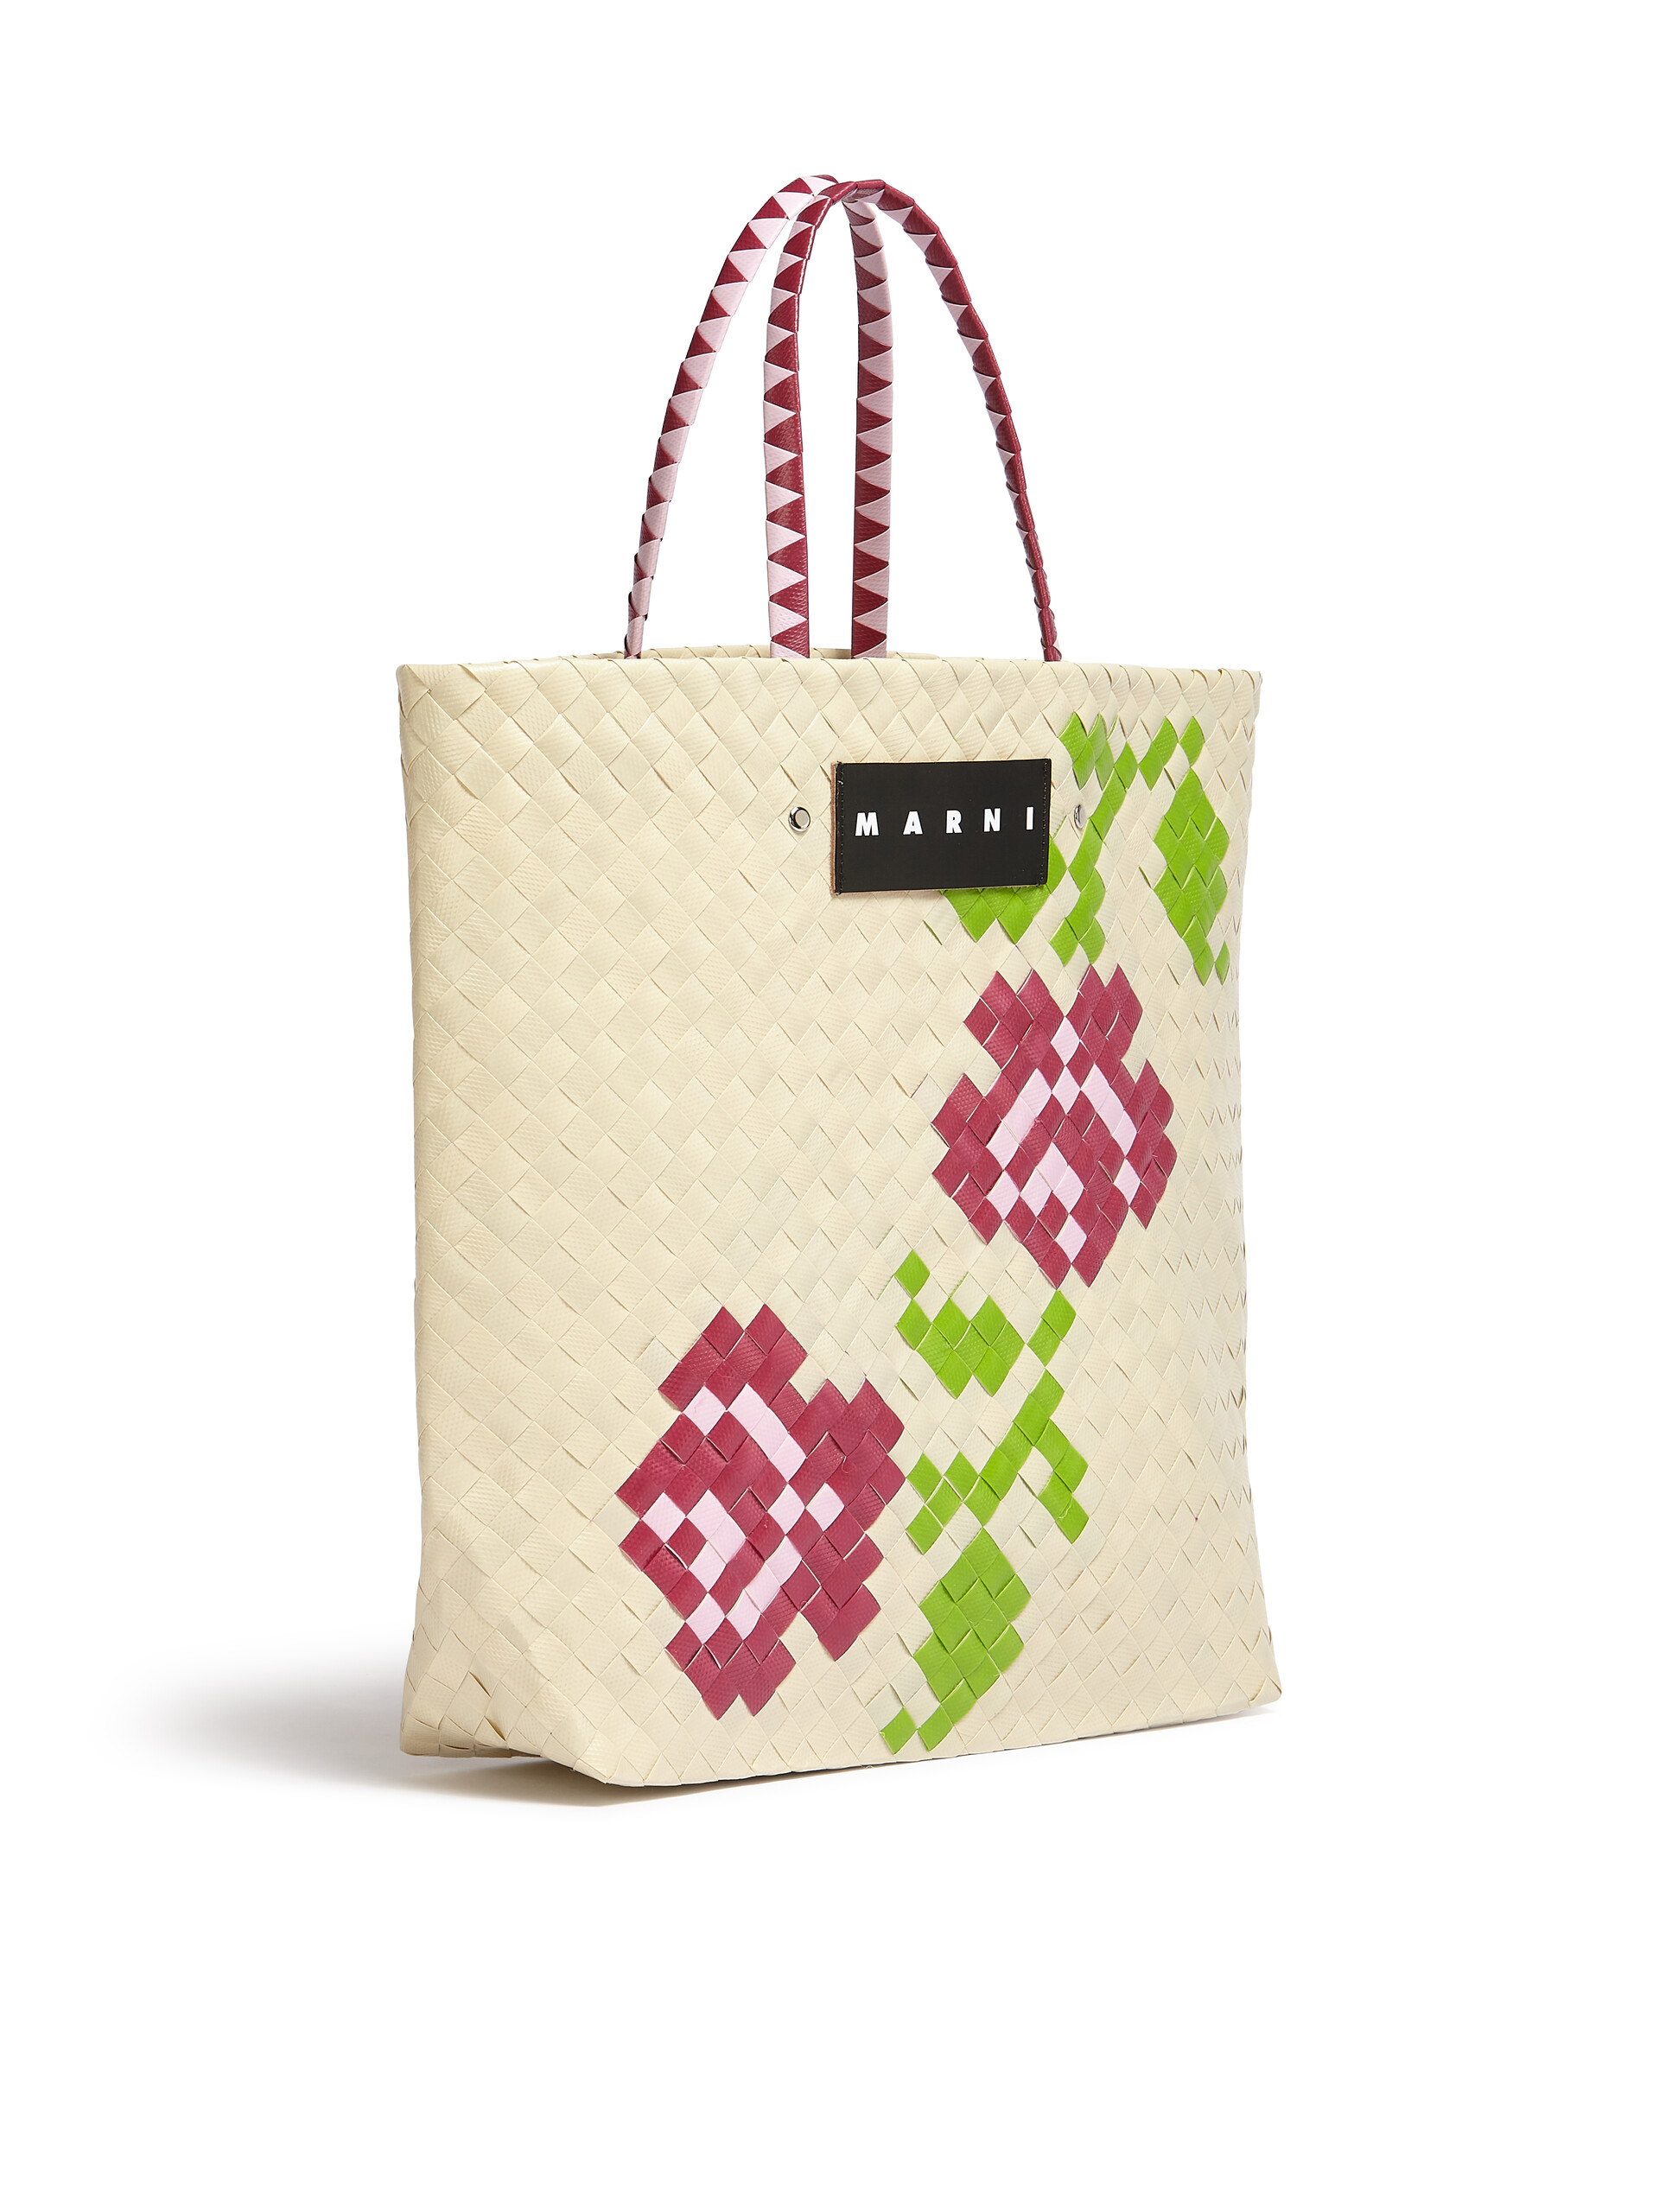 MARNI MARKET medium bag in white flower motif - Bags - Image 2